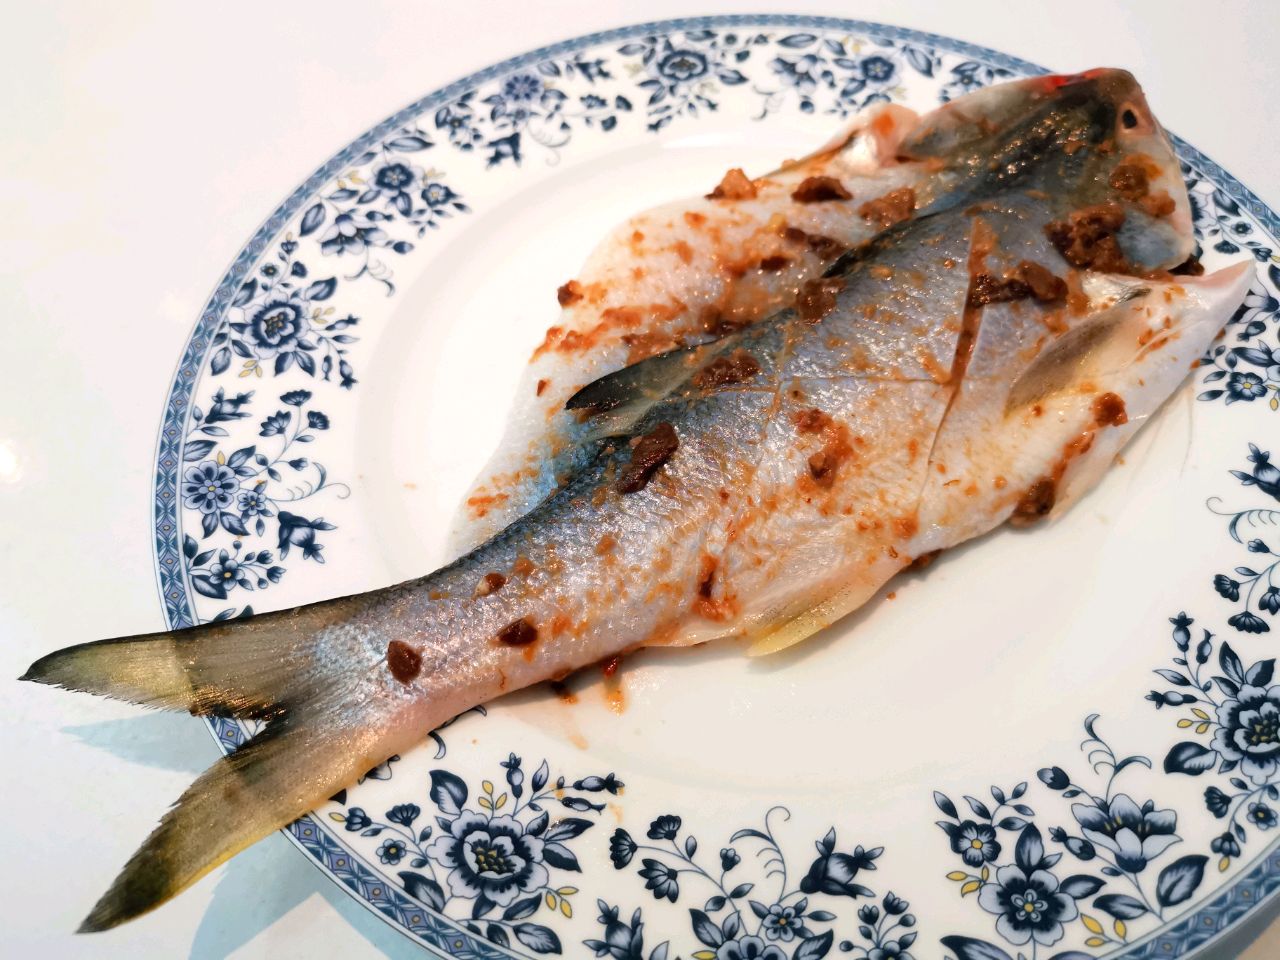 马友鱼/午鱼 (Threadfin) - YS Seafood 渔乡鲜货 · 直送到府